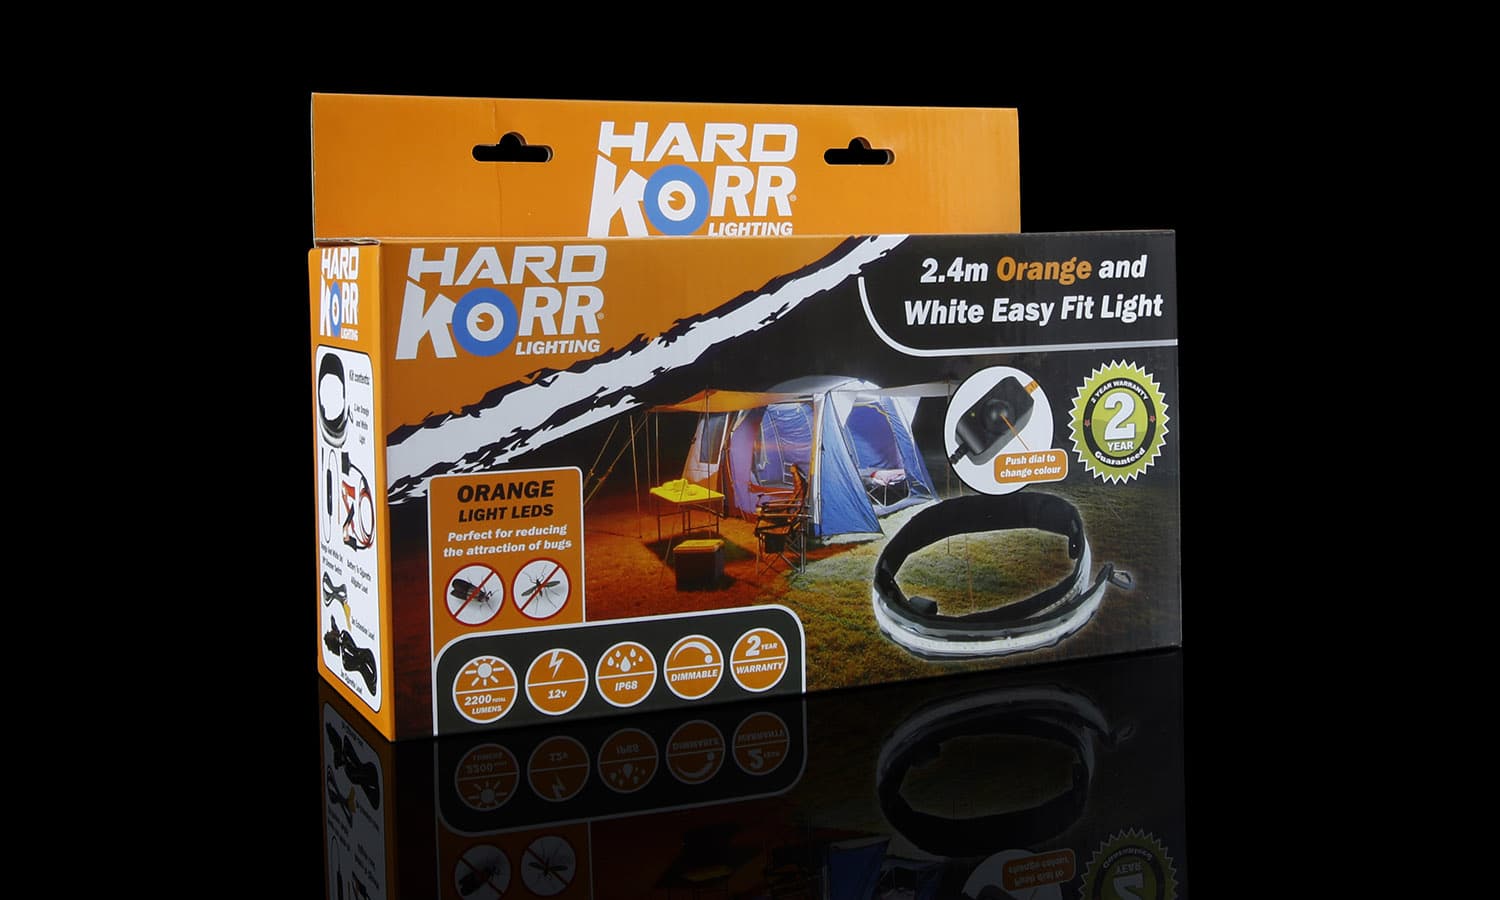 Hard Korr 8FT Orange and White Easy Fit Light